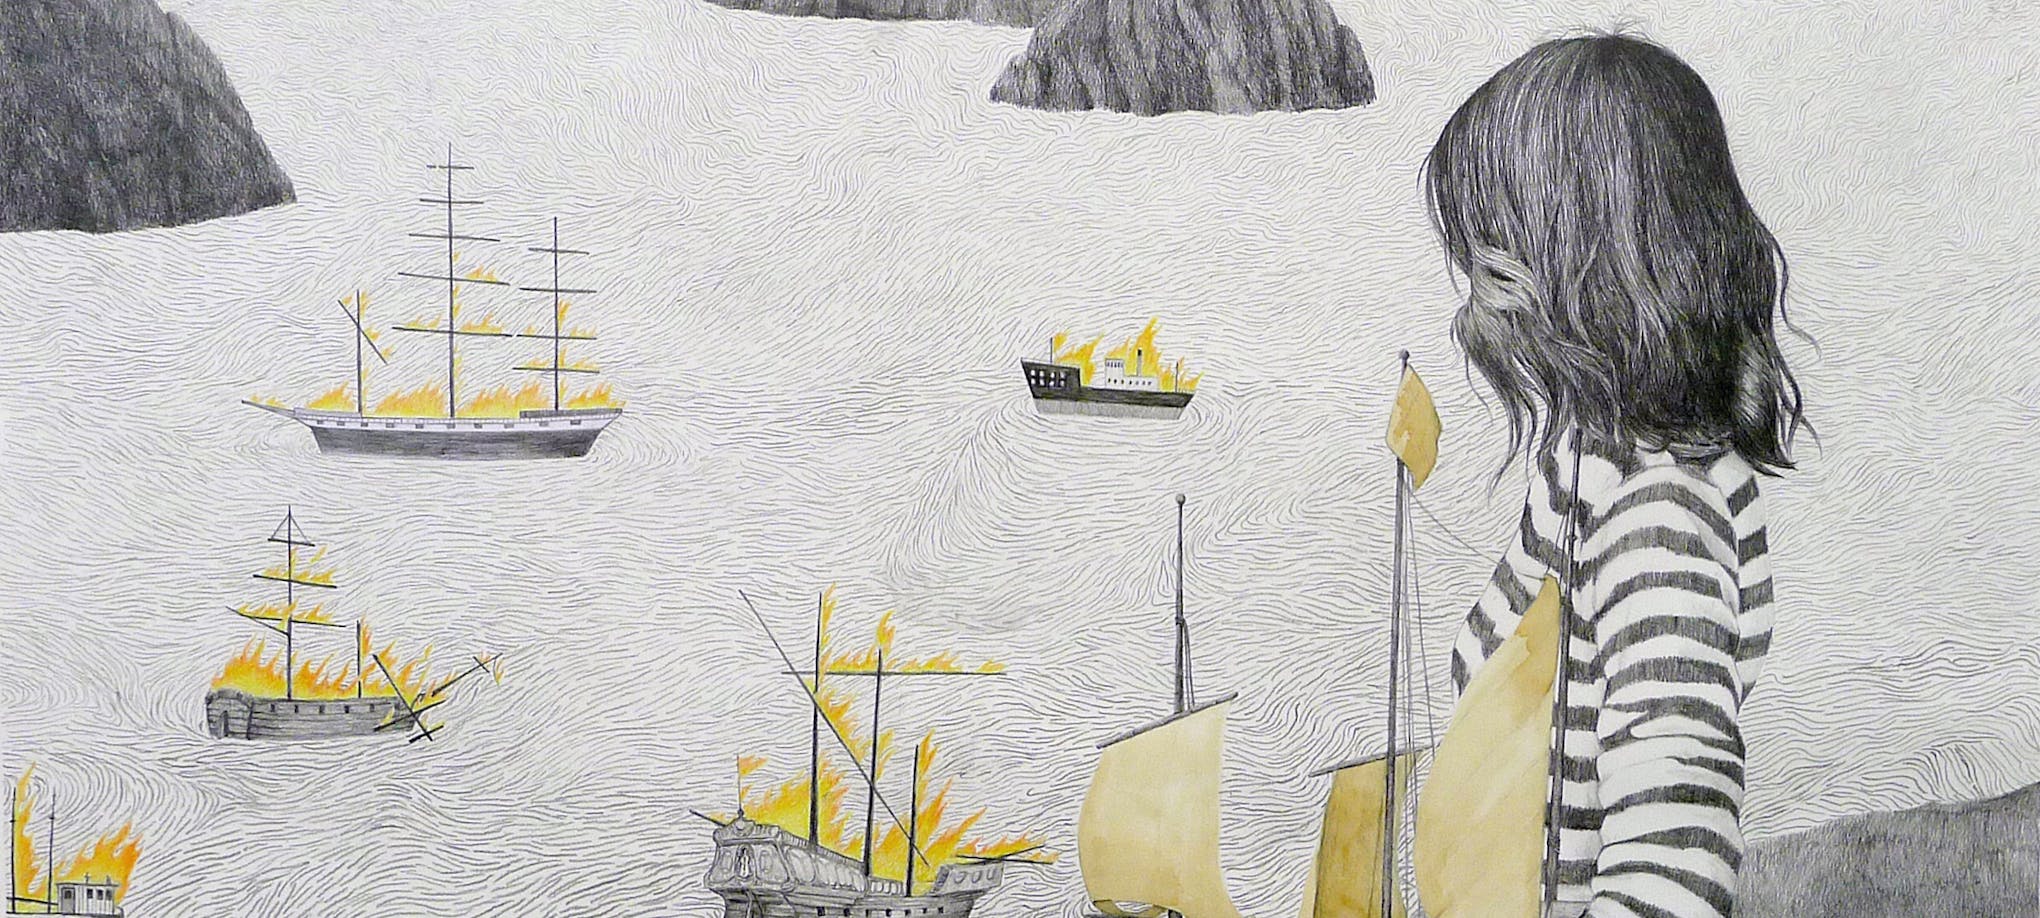 Susanna Kajermo: Brennende skip, 2019, blyant, fargeblyant og kaffe på papir, 82 x 95 cm